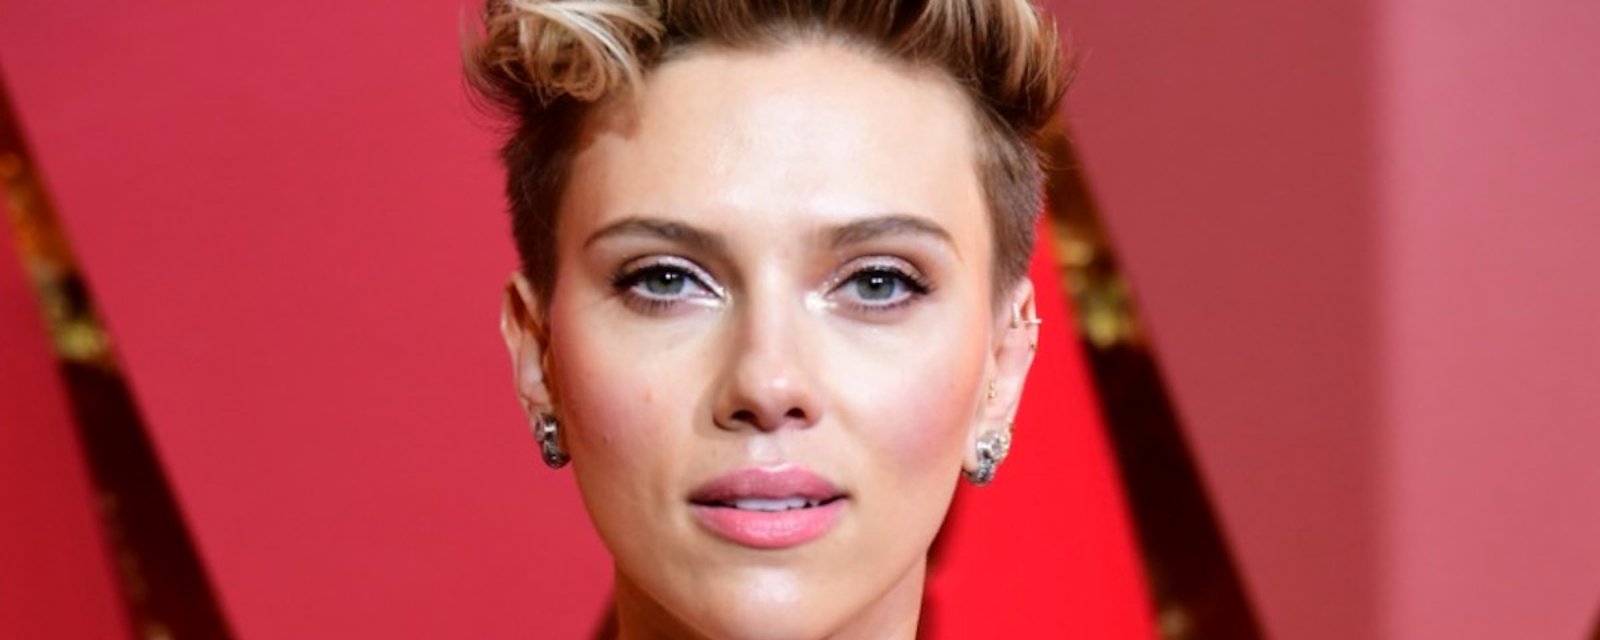 La grand-mère de cet internaute ressemble comme deux gouttes d'eau à Scarlett Johansson! 